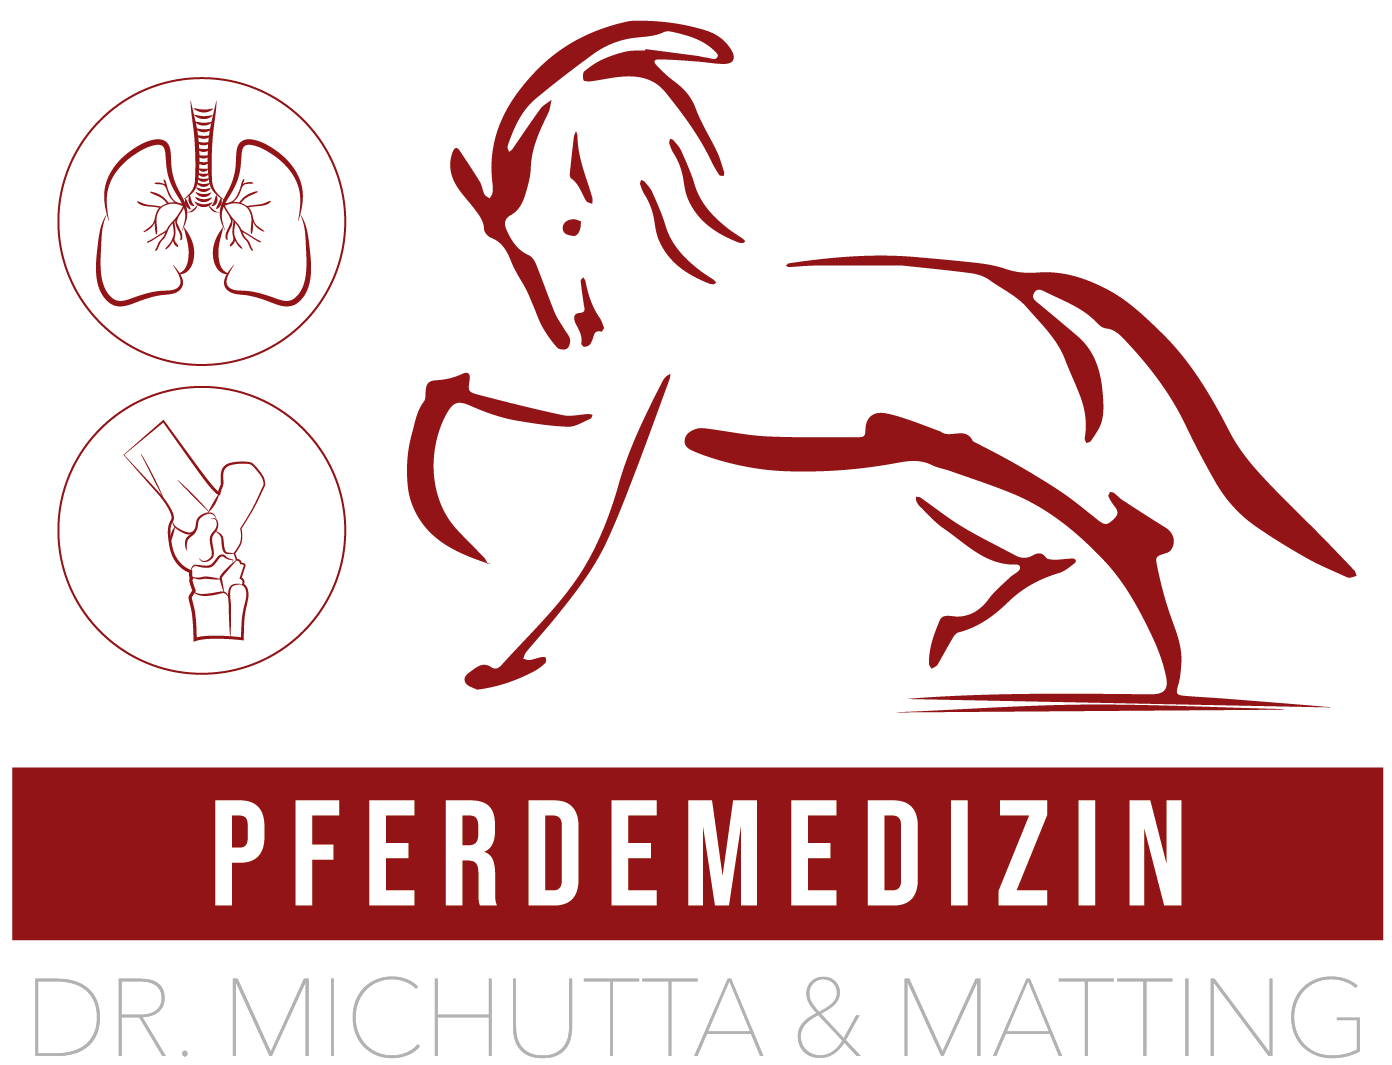 Pferdemedizin Dr. Michutta & Matting